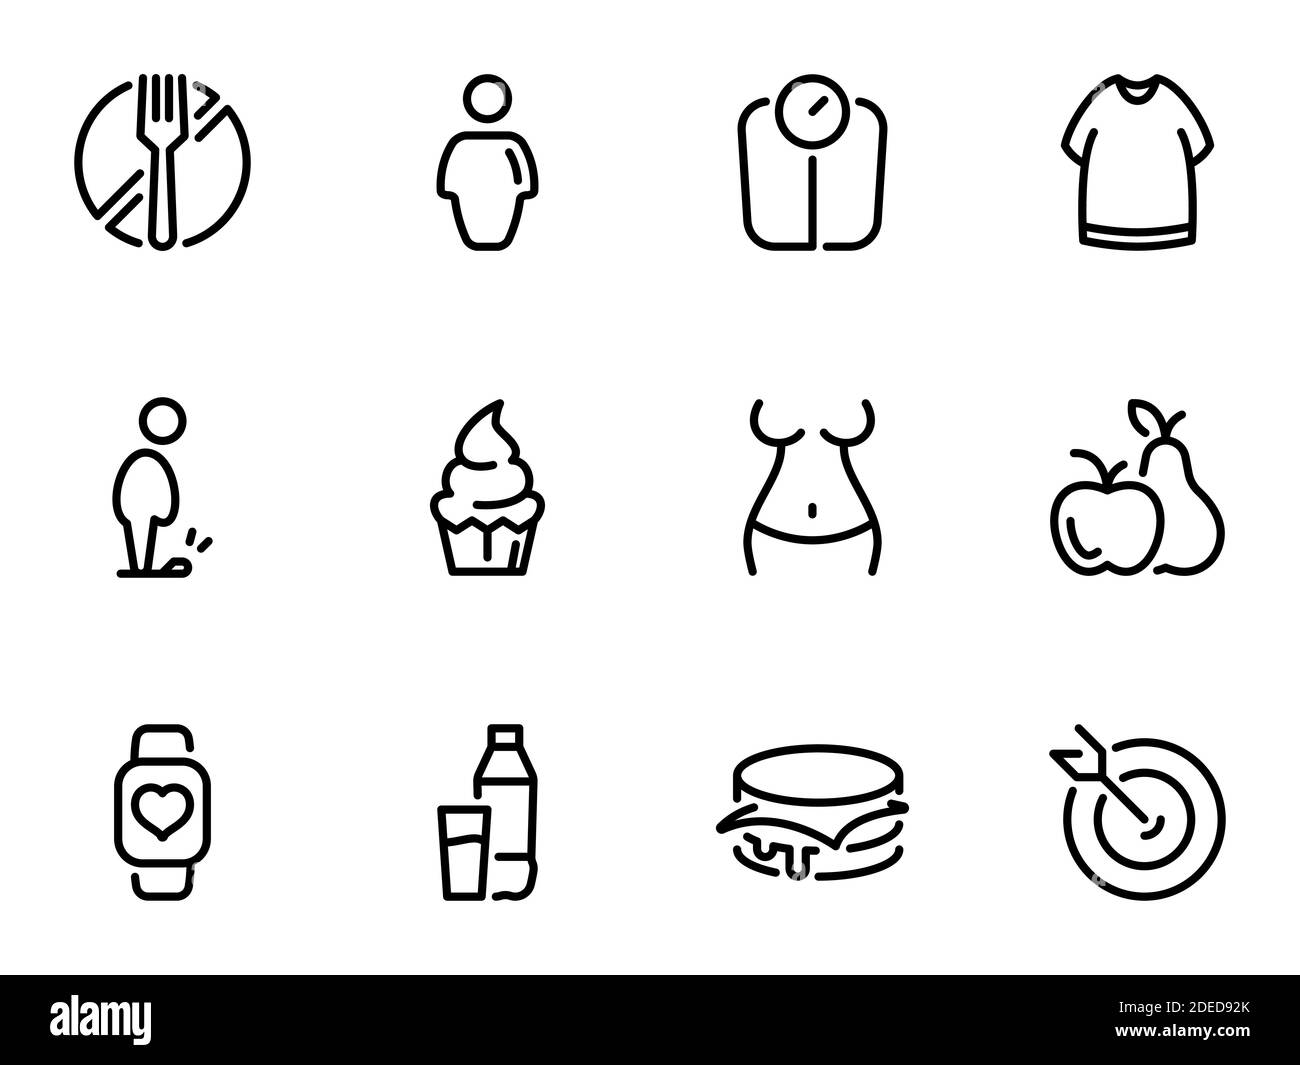 Insieme di icone vettoriali nere, isolate su sfondo bianco, sul tema il problema dell'obesità, perdita di peso e tentazioni Illustrazione Vettoriale